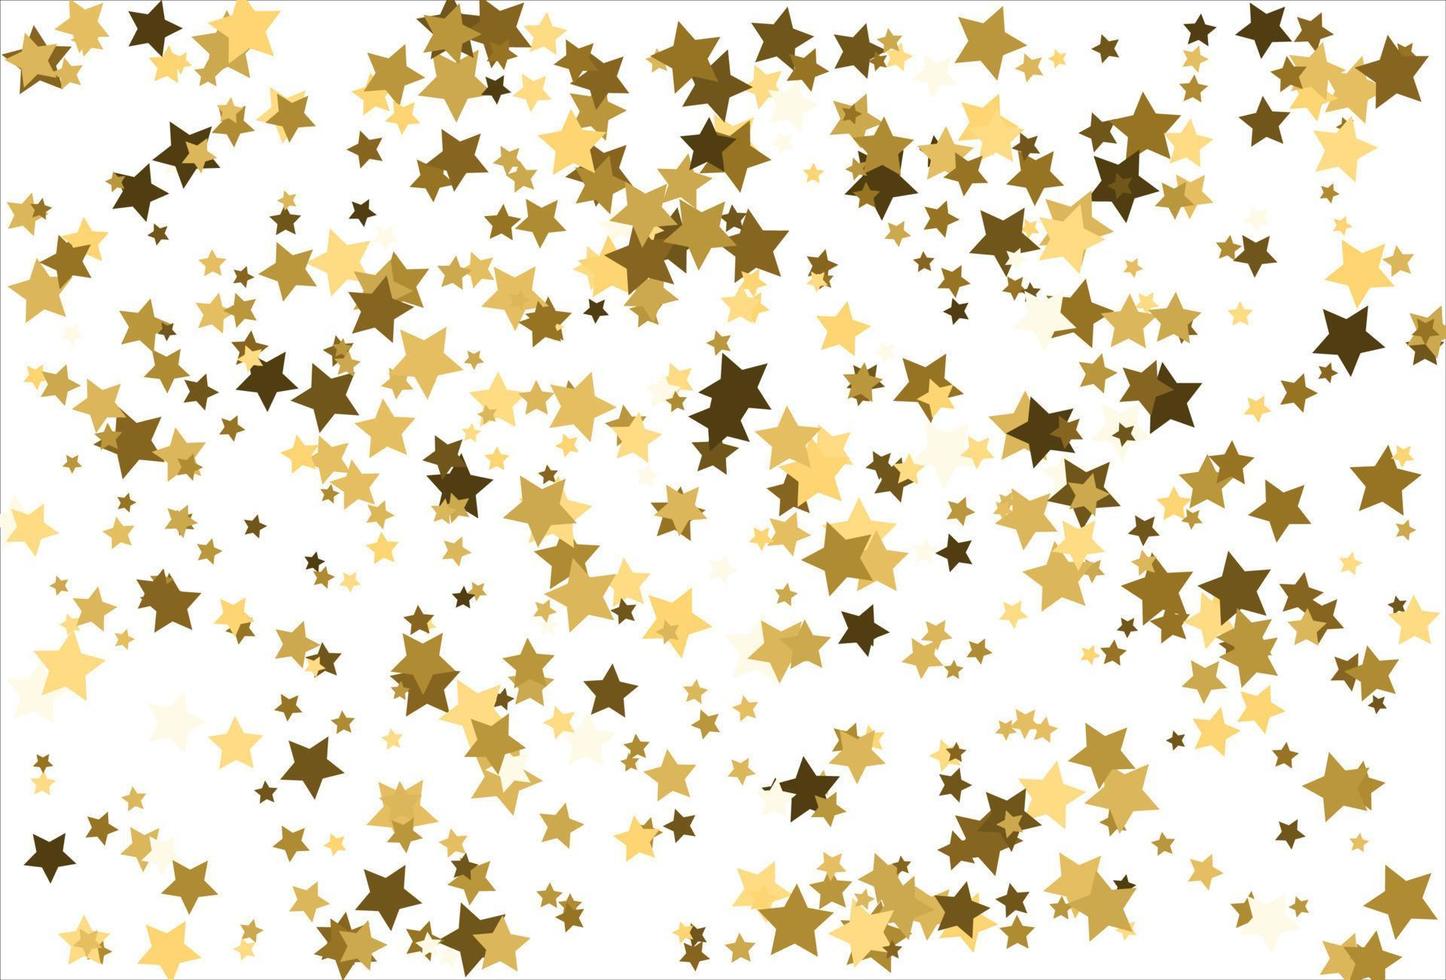 étoiles d'or tombant au hasard sur fond blanc. motif de paillettes pour bannière, carte de voeux, carte de noël et du nouvel an, invitation, carte postale, emballage en papier vecteur